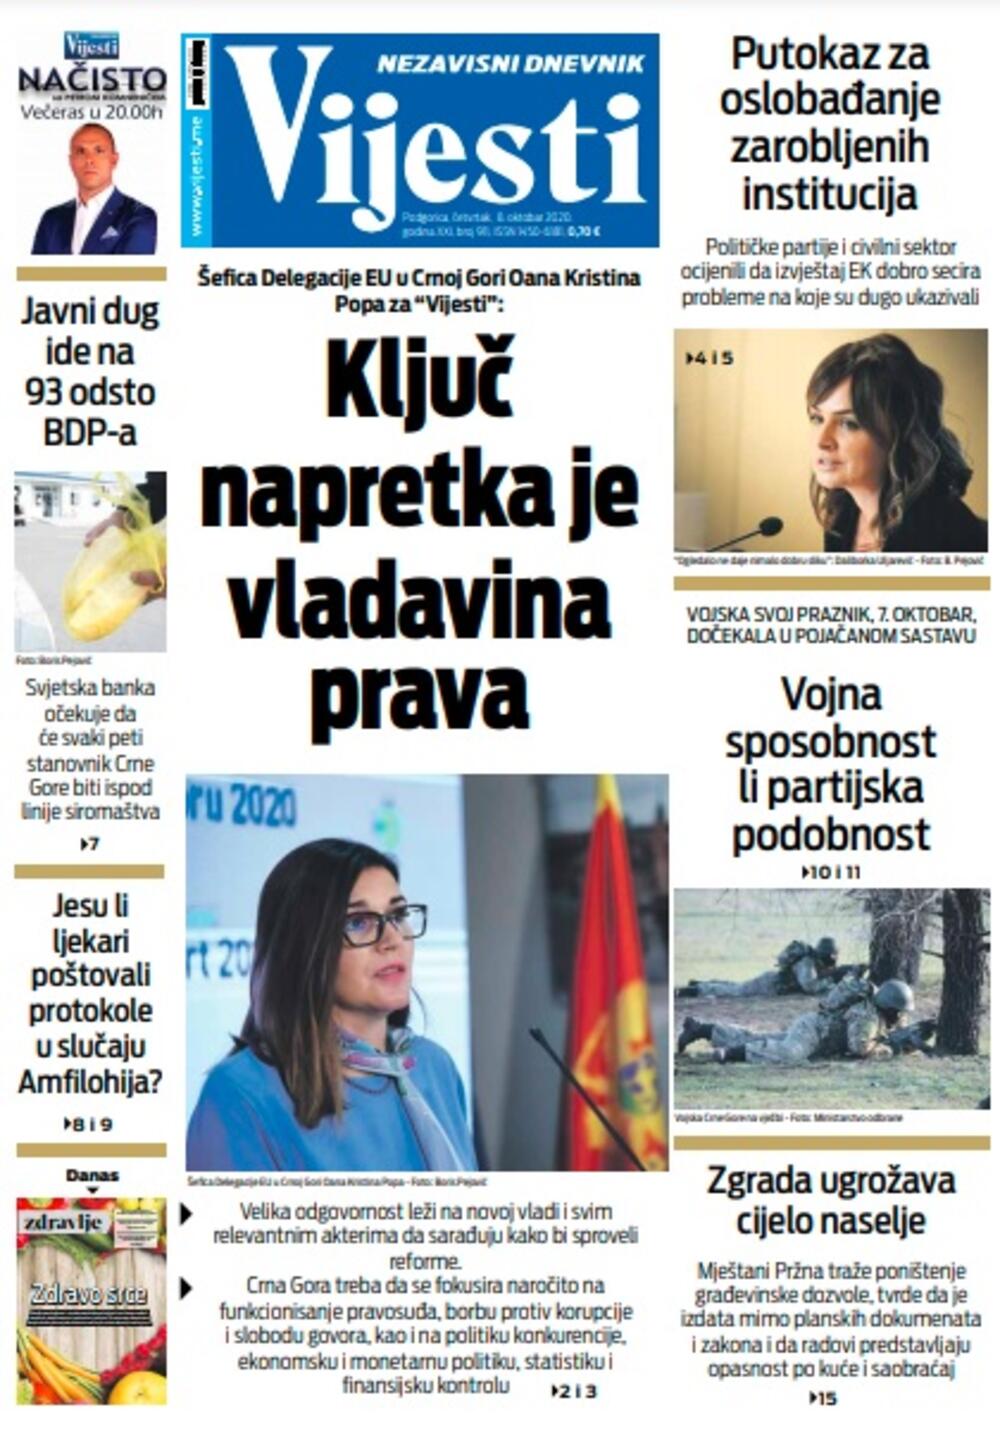 Naslovna strana "Vijesti" za četvrtak 8. oktobar 2020. godine, Foto: Vijesti